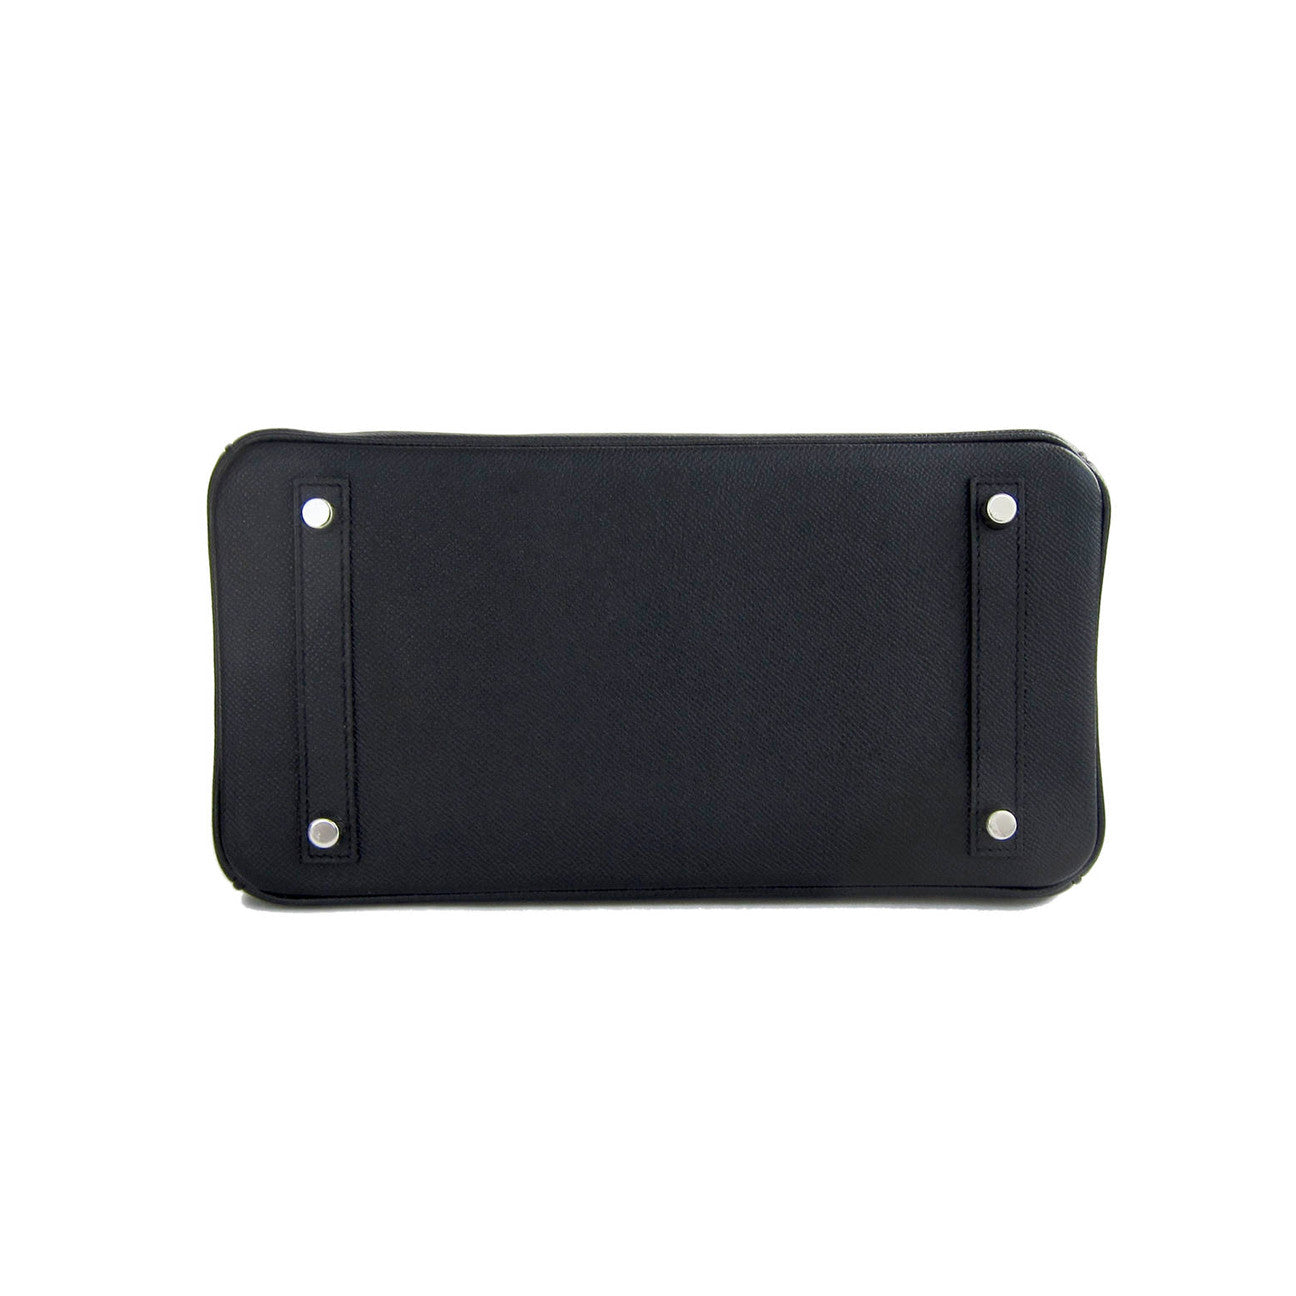 Black Birkin 30cm in Epsom Leather with Palladium Hardware, 2018